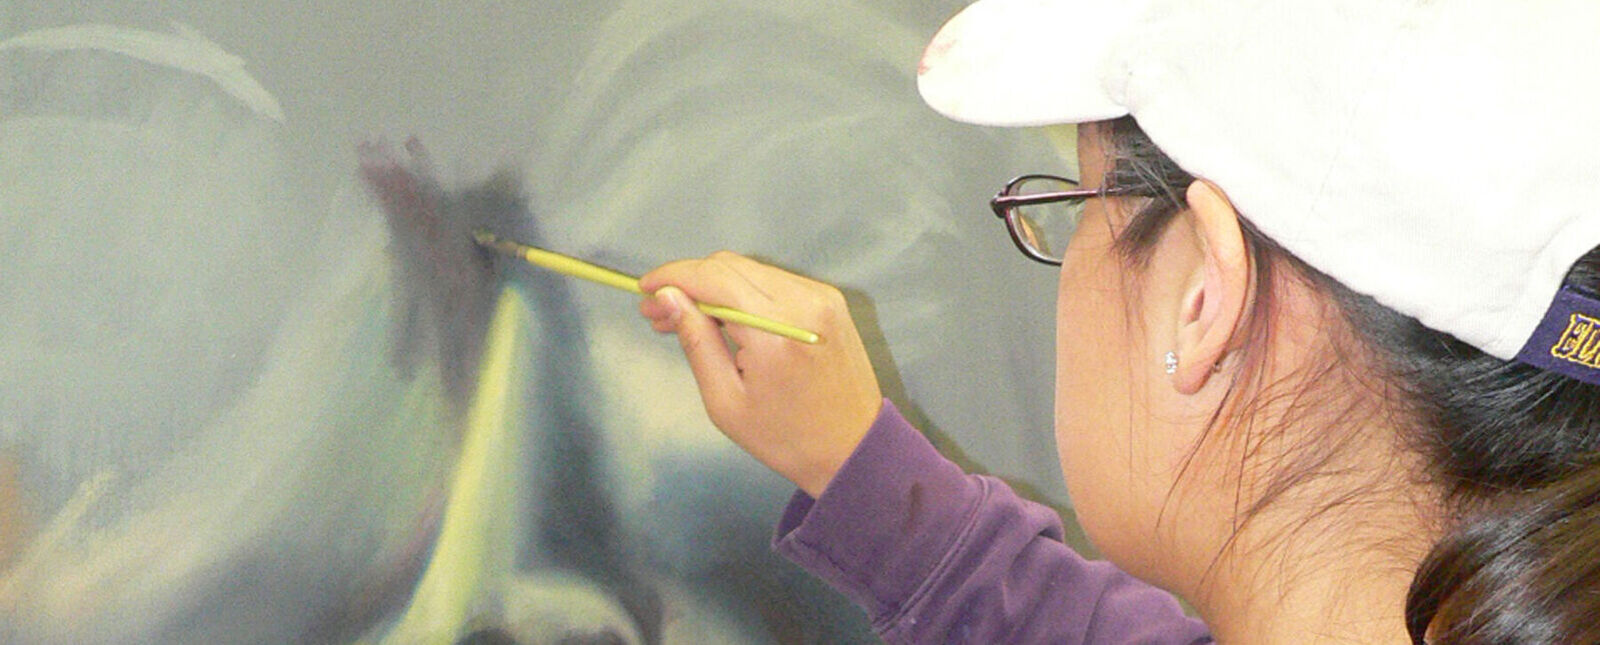 A female student paints a portrait on a large canvas